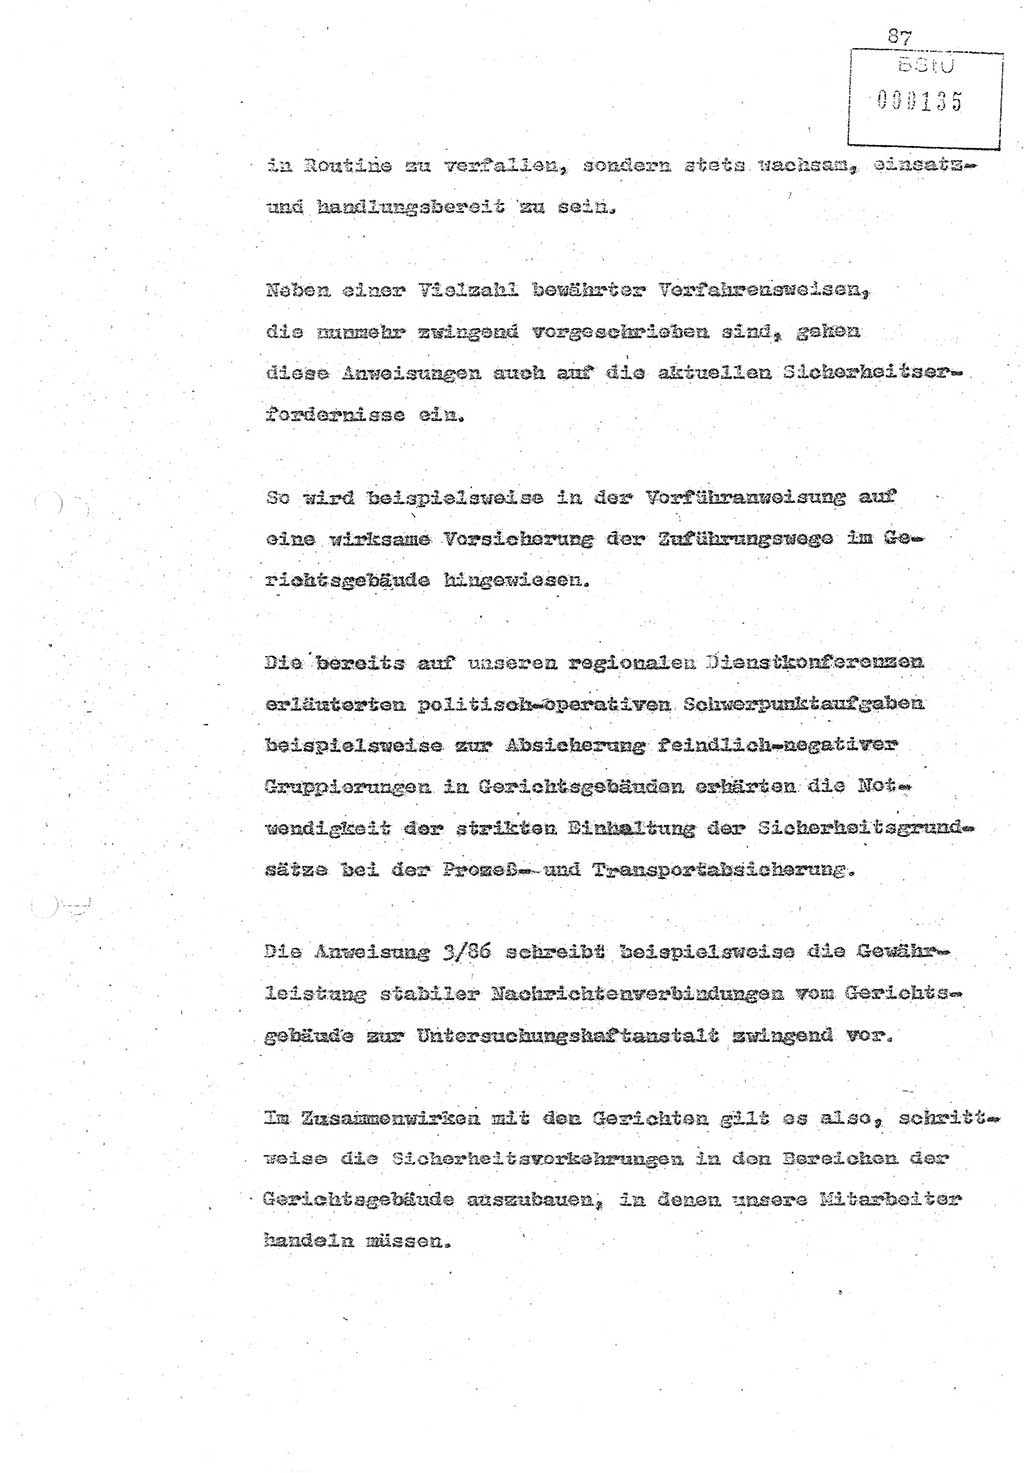 Referat (Oberst Siegfried Rataizick) zur Dienstkonferenz der Abteilung ⅩⅣ des MfS Berlin [Ministerium für Staatssicherheit, Deutsche Demokratische Republik (DDR)] Berlin-Hohenschönhausen vom 5.3.1986 bis 6.3.1986, Abteilung XIV, Berlin, 20.2.1986, Seite 87 (Ref. Di.-Konf. Abt. ⅩⅣ MfS DDR Bln. 1986, S. 87)